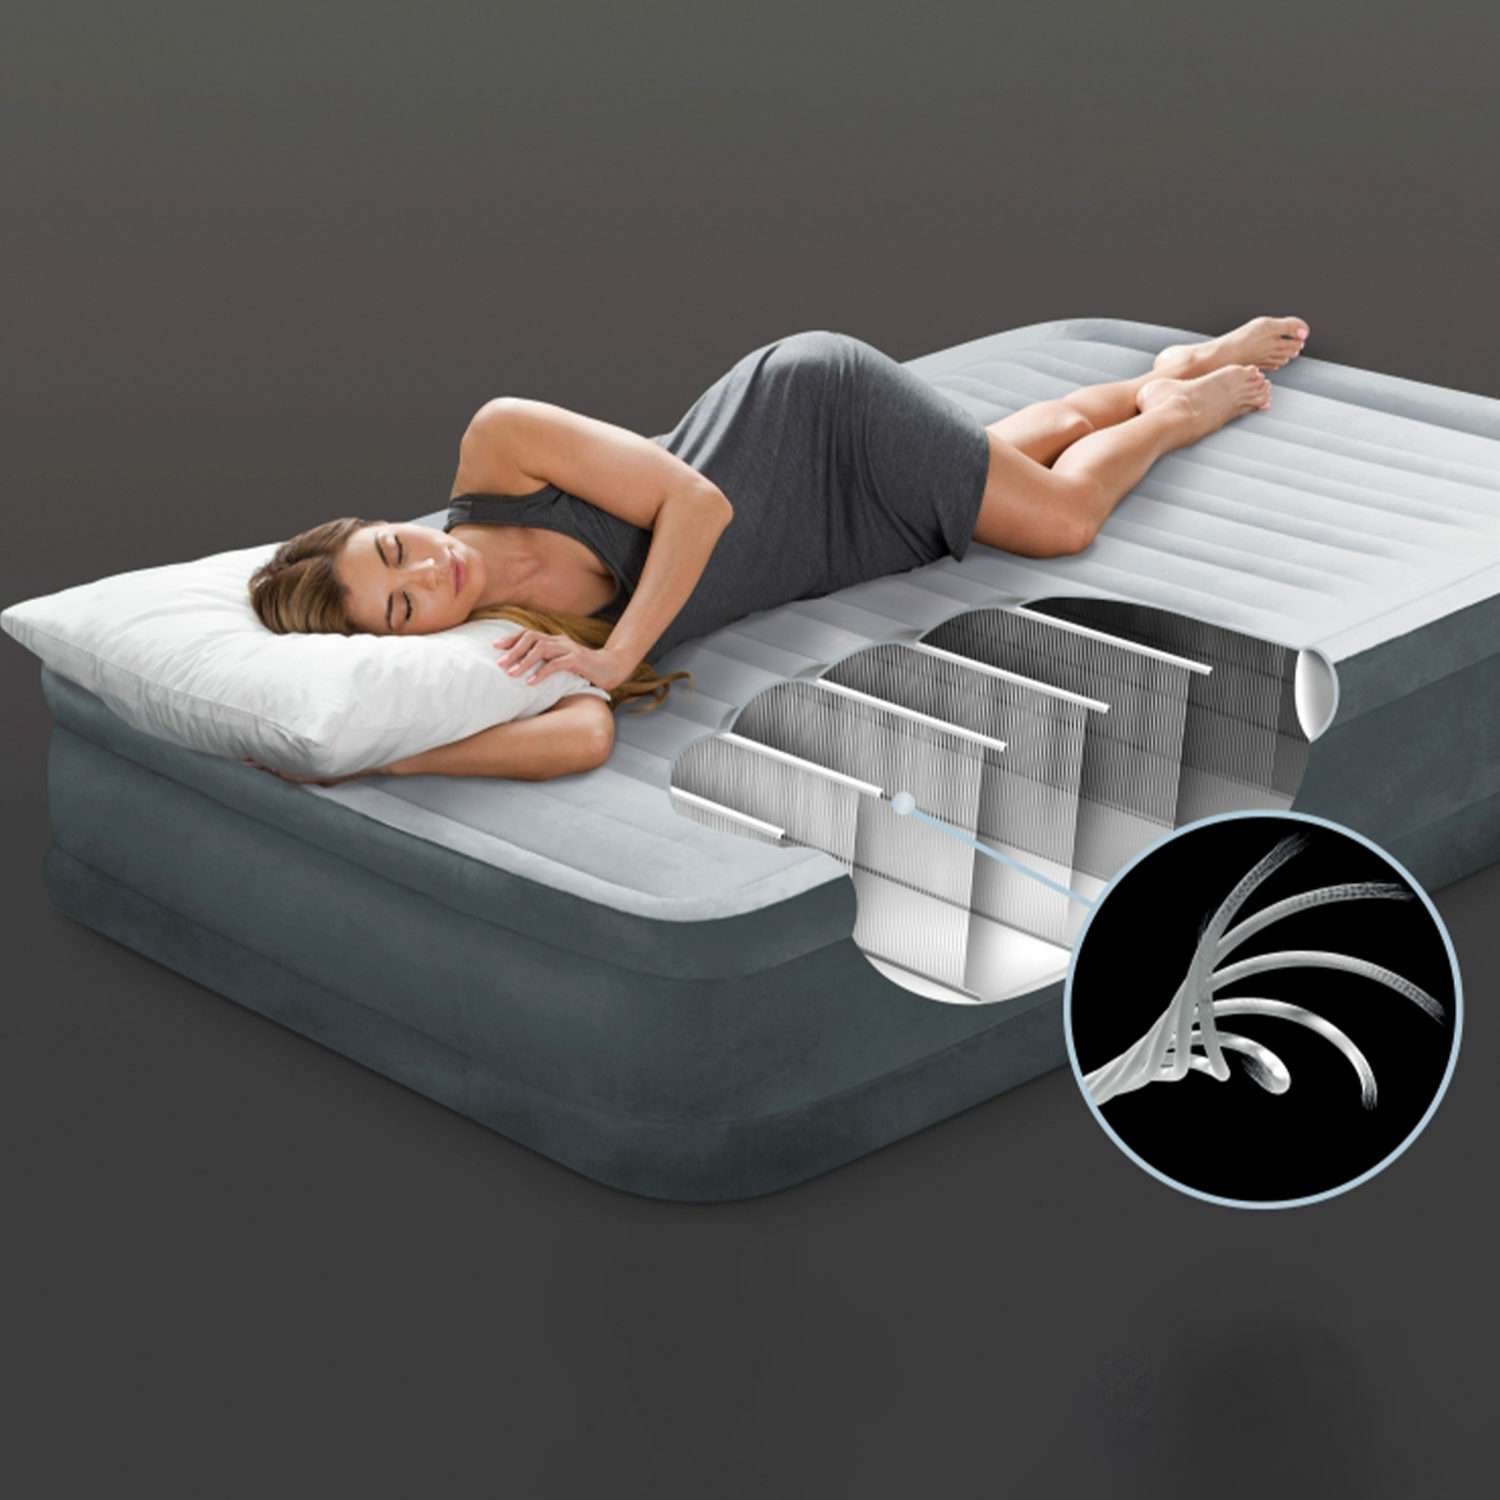 Надувной матрас INTEX кровать комфорт-плюш с электрическим встроенным насосом 99х191х33см - фото 3